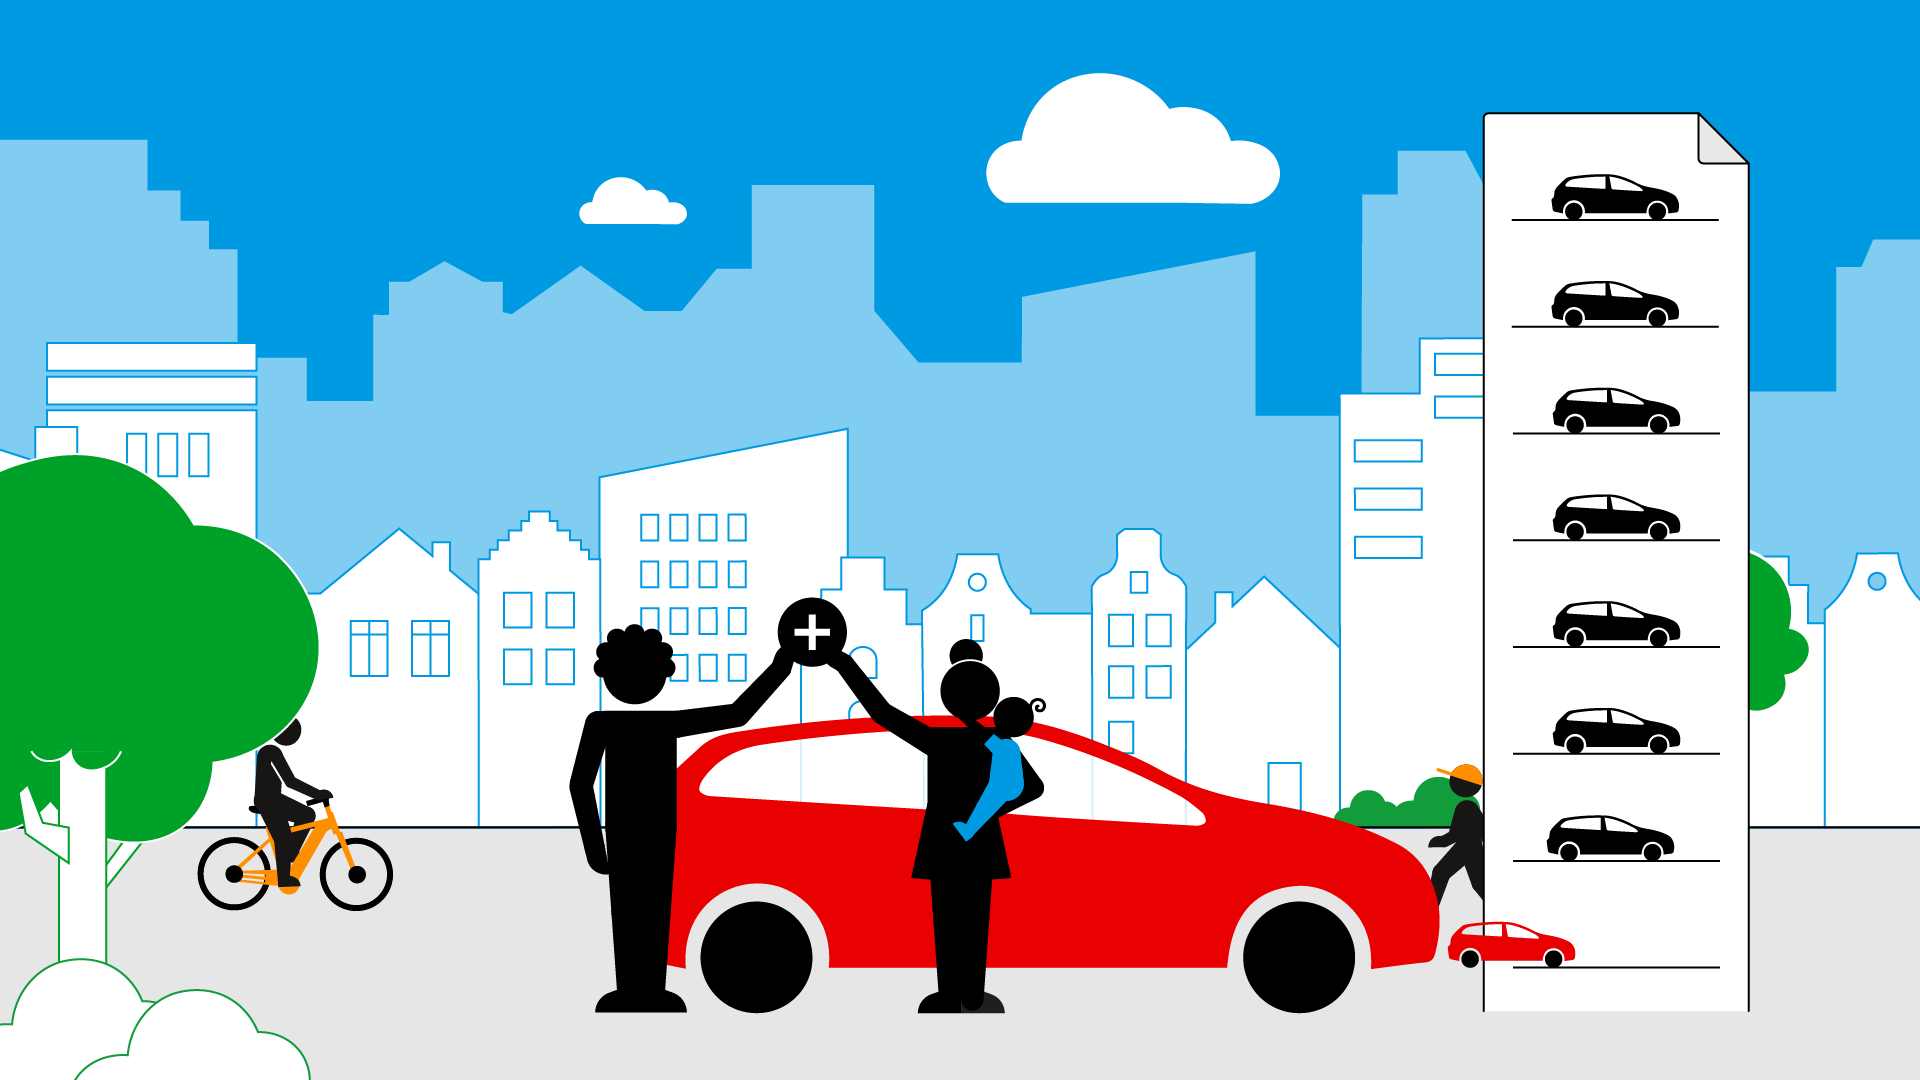 Illustratie uitleganimatie: twee mensen staan voor hun auto en plaatsen hun auto op de wachtlijst voor een vergunning